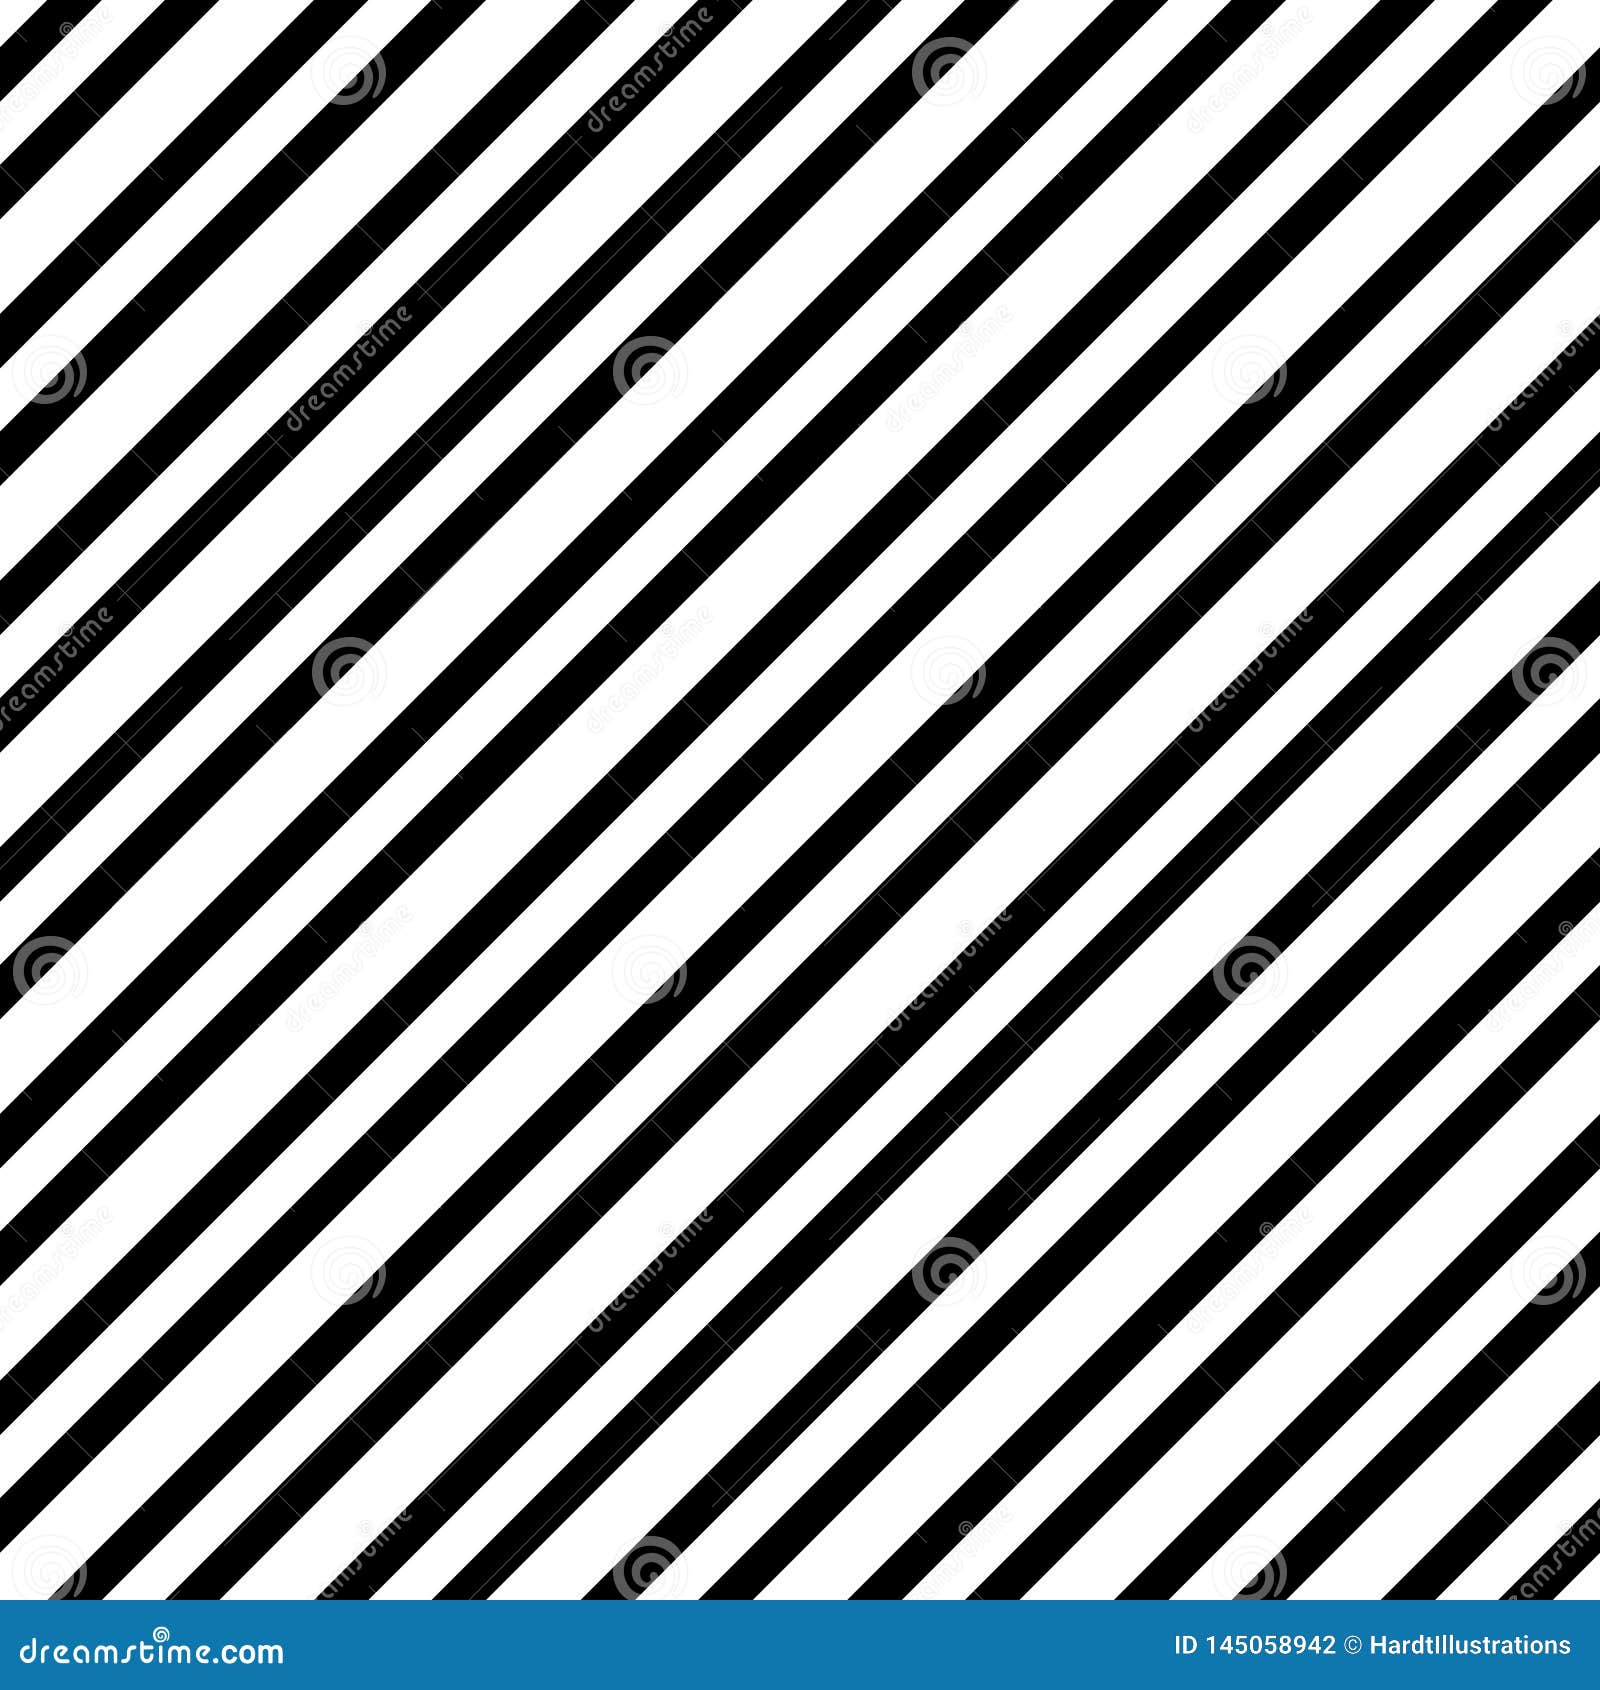 striped seamless pattern